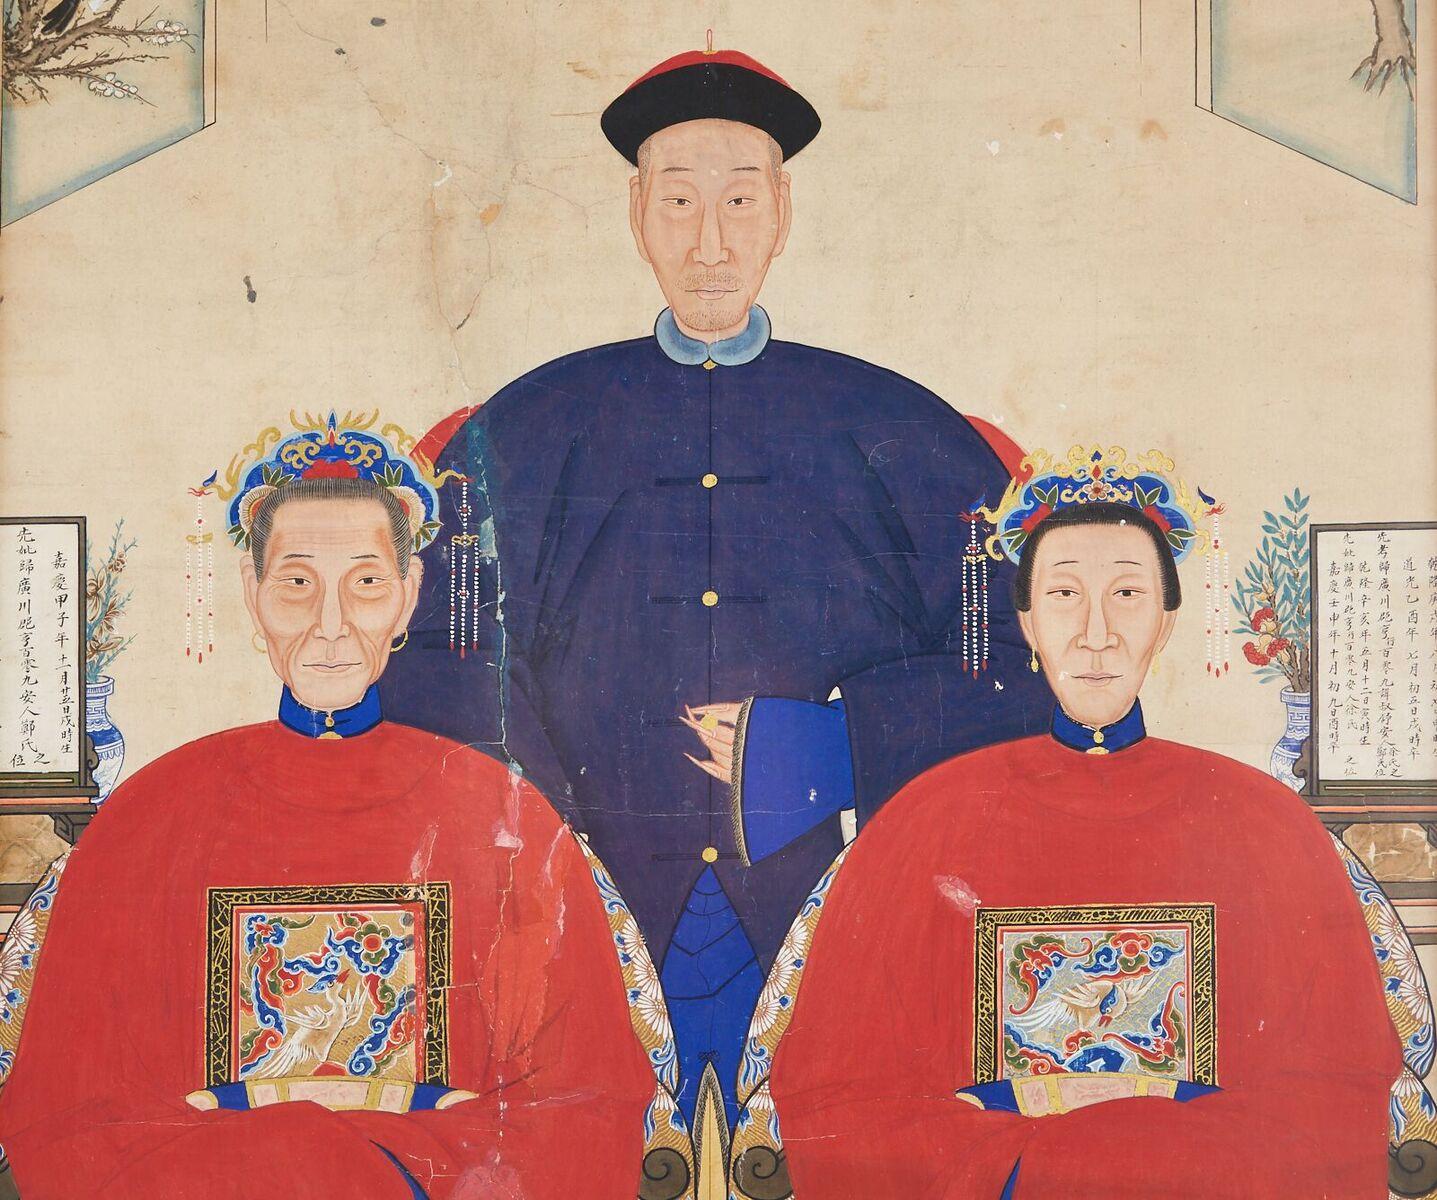 Grand portrait d'ancêtre de la dynastie chinoise Qing, monté et encadré. Représentation d'un patriarche et de deux matriarches assis dans leurs robes. Encre et pigments de couleur vibrants avec écriture chinoise de chaque côté de la peinture.